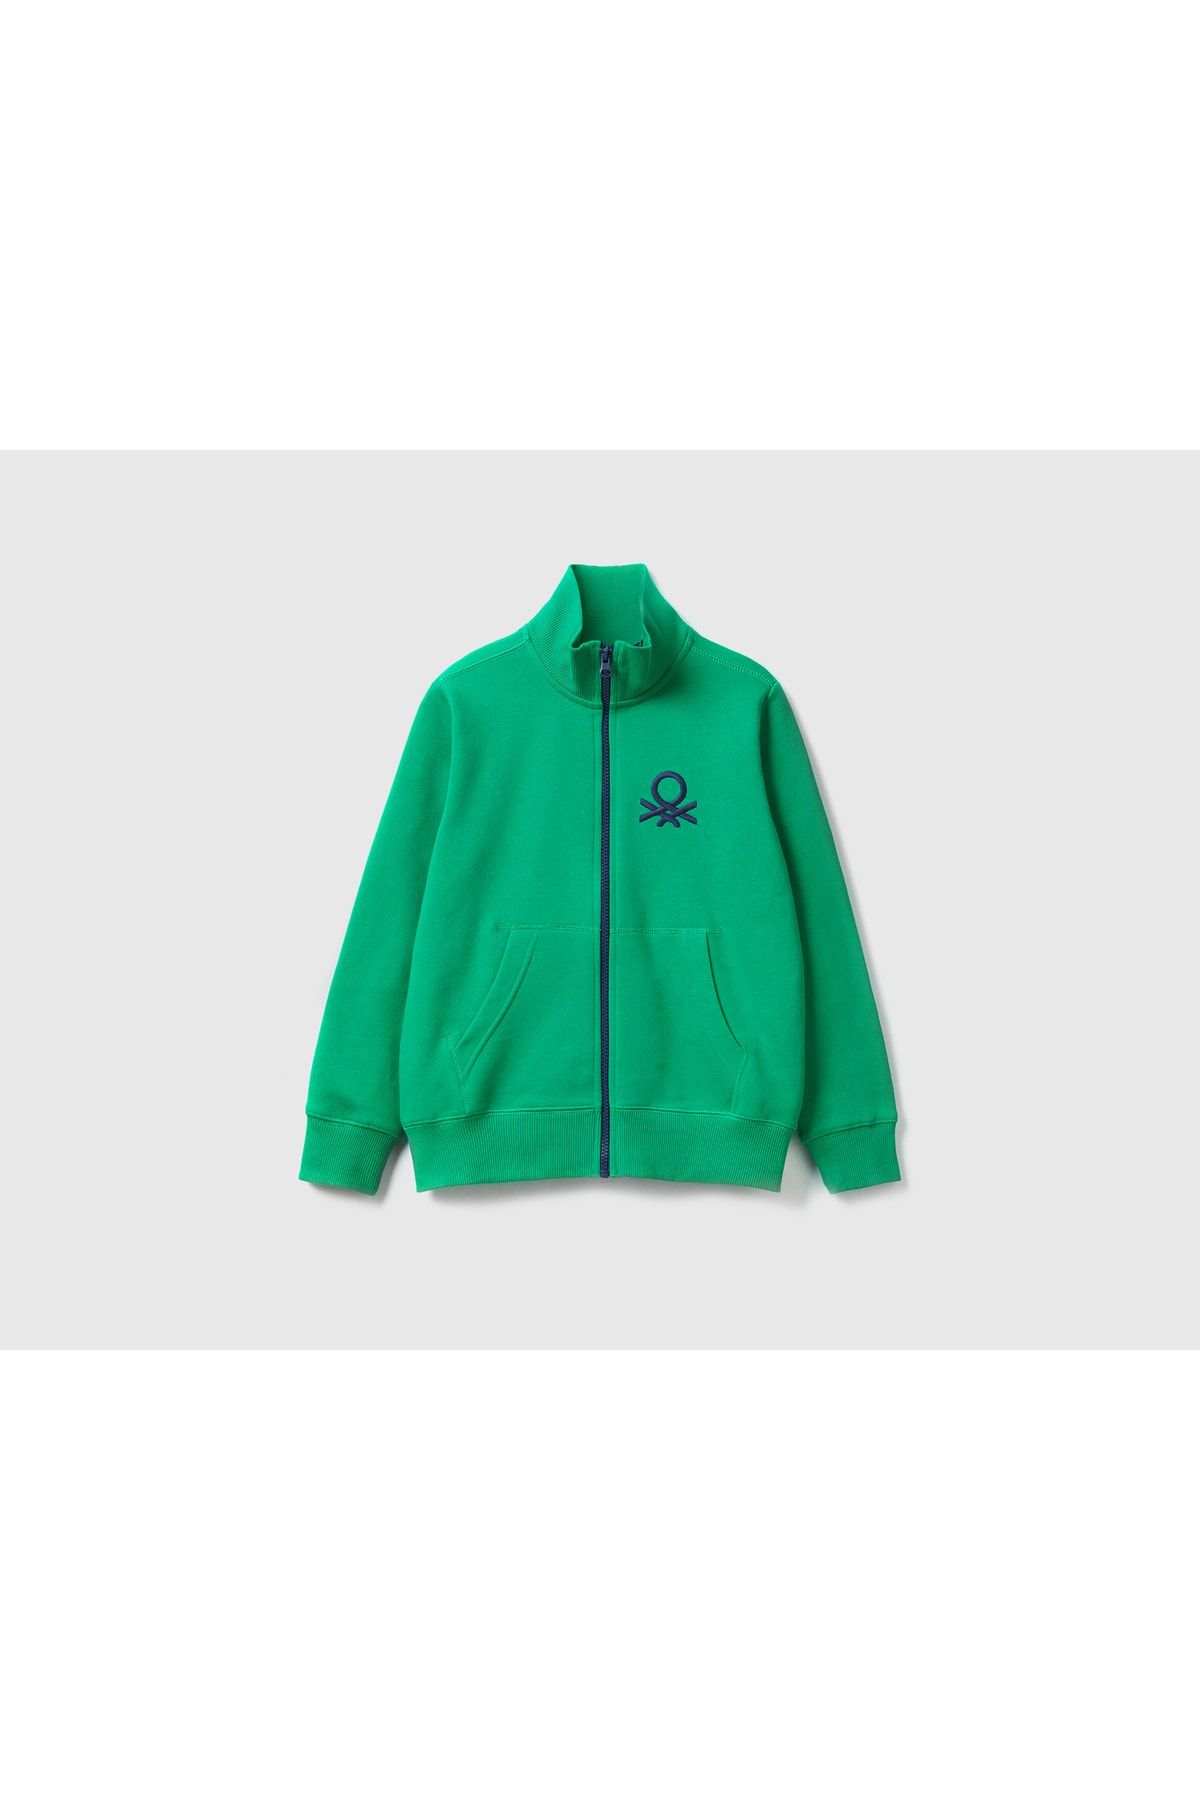 United Colors of Benetton Erkek Çocuk Yeşil Logolu Sweatshirt Yeşil